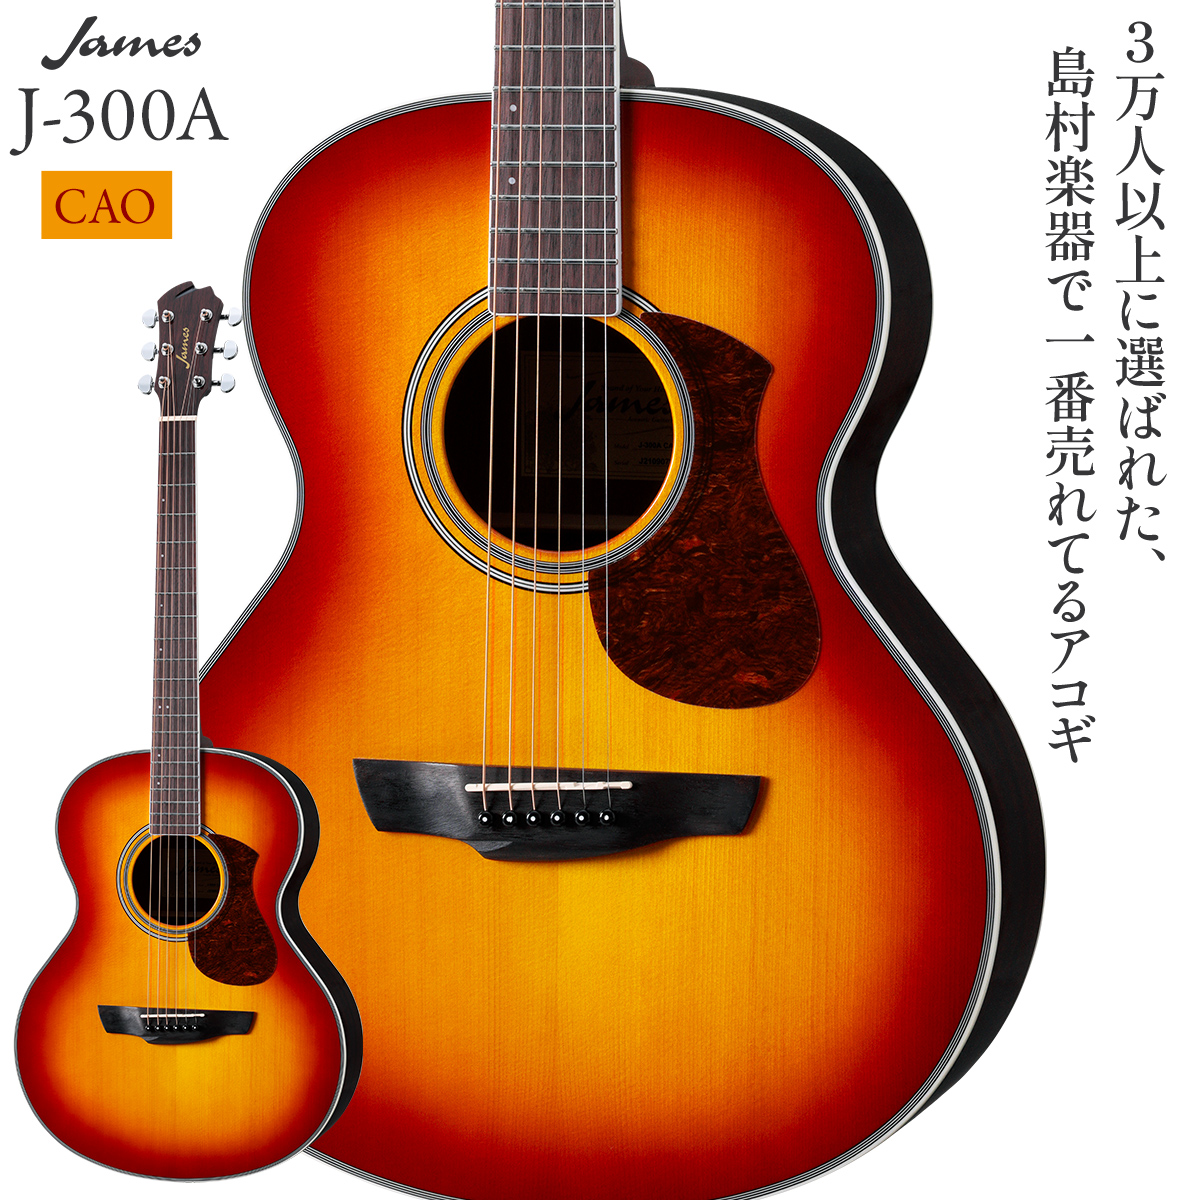 22,800円James 島村楽器 アコースティックギター